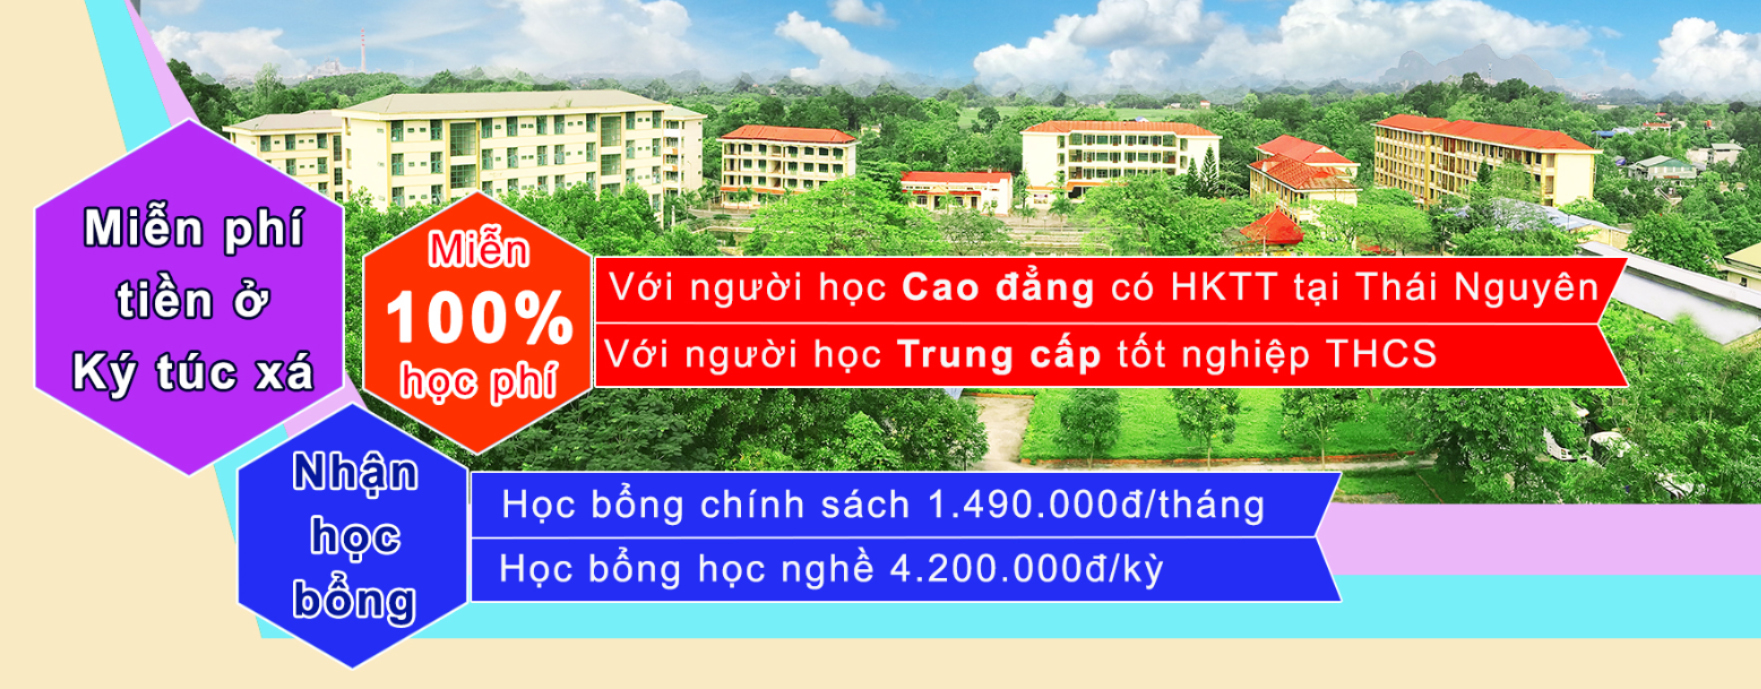 Trường Cao đẳng công nghiệp Thái Nguyên